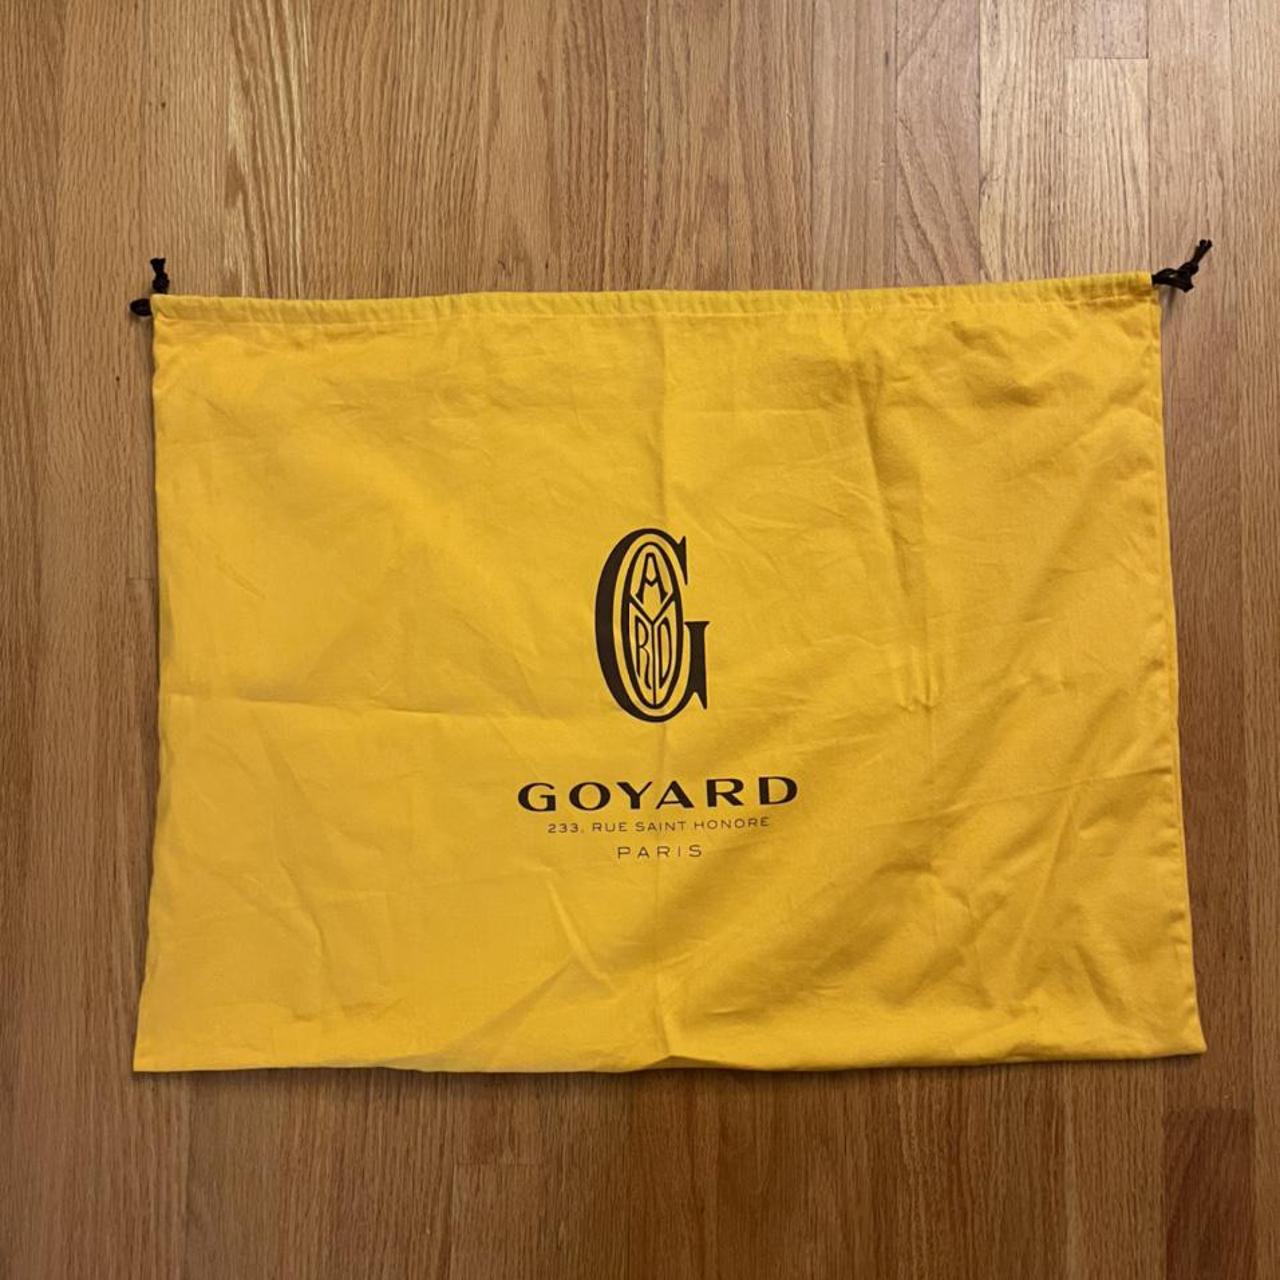 Goyard dust bag , Brand new, #Goyard #GoyardDustBag